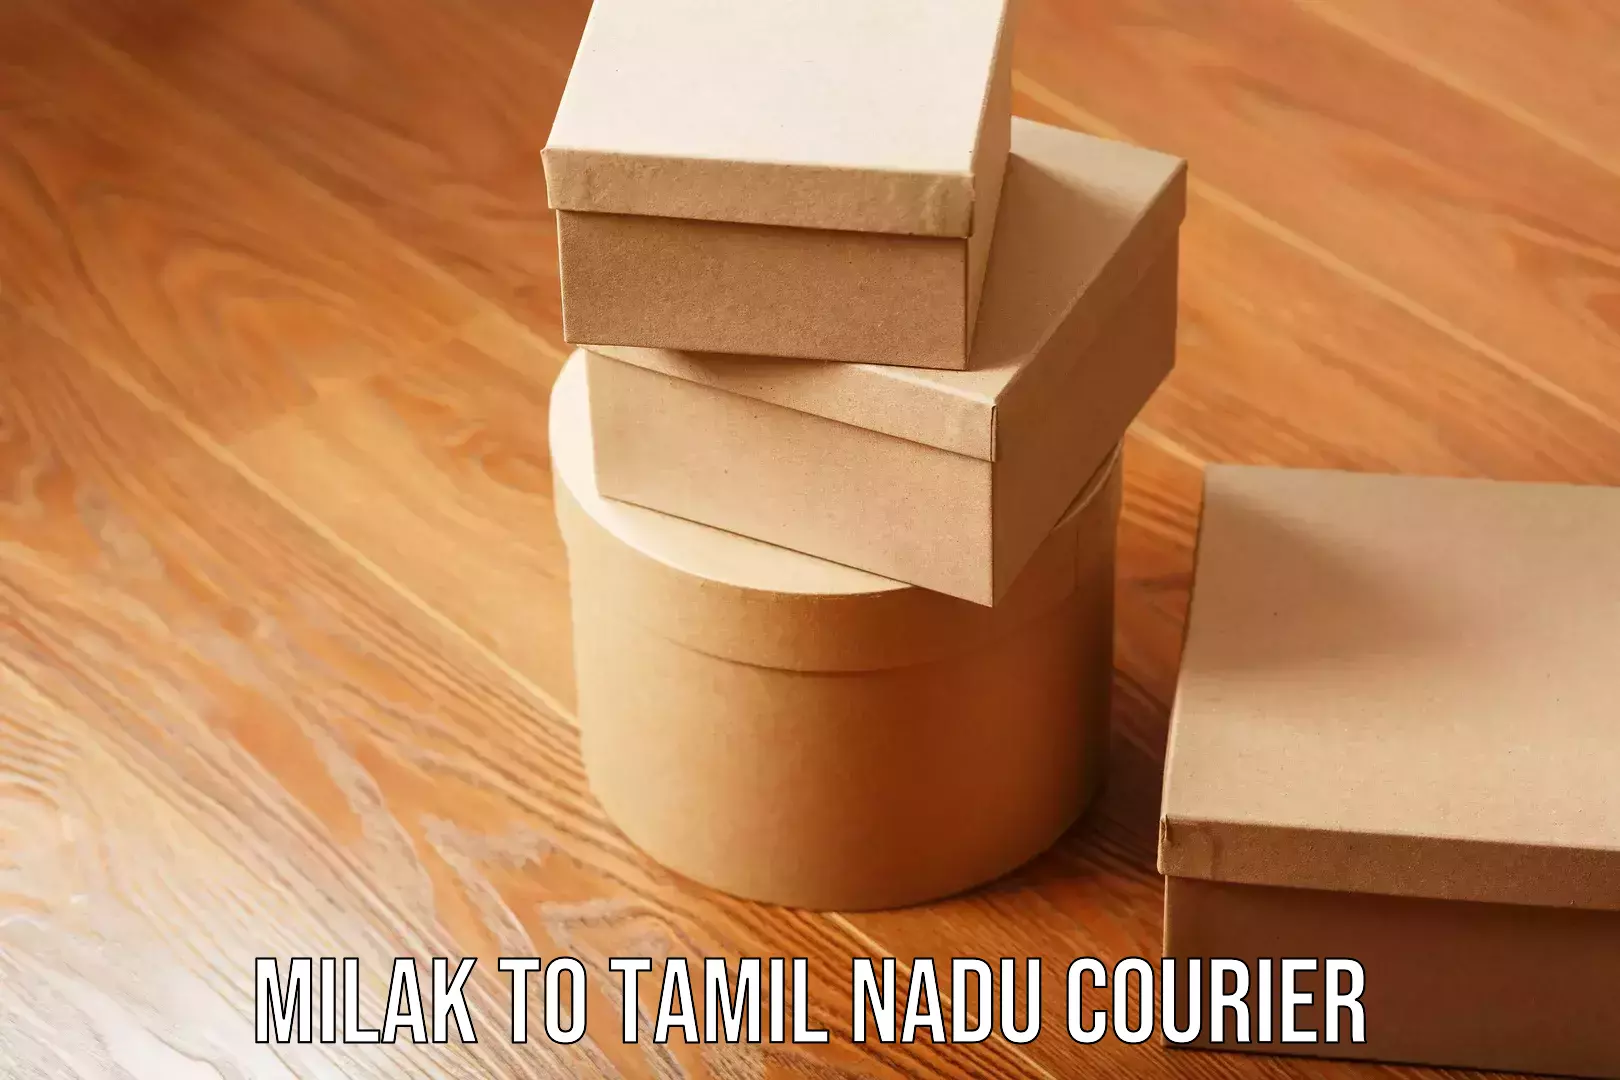 Custom furniture transport Milak to Tamil Nadu